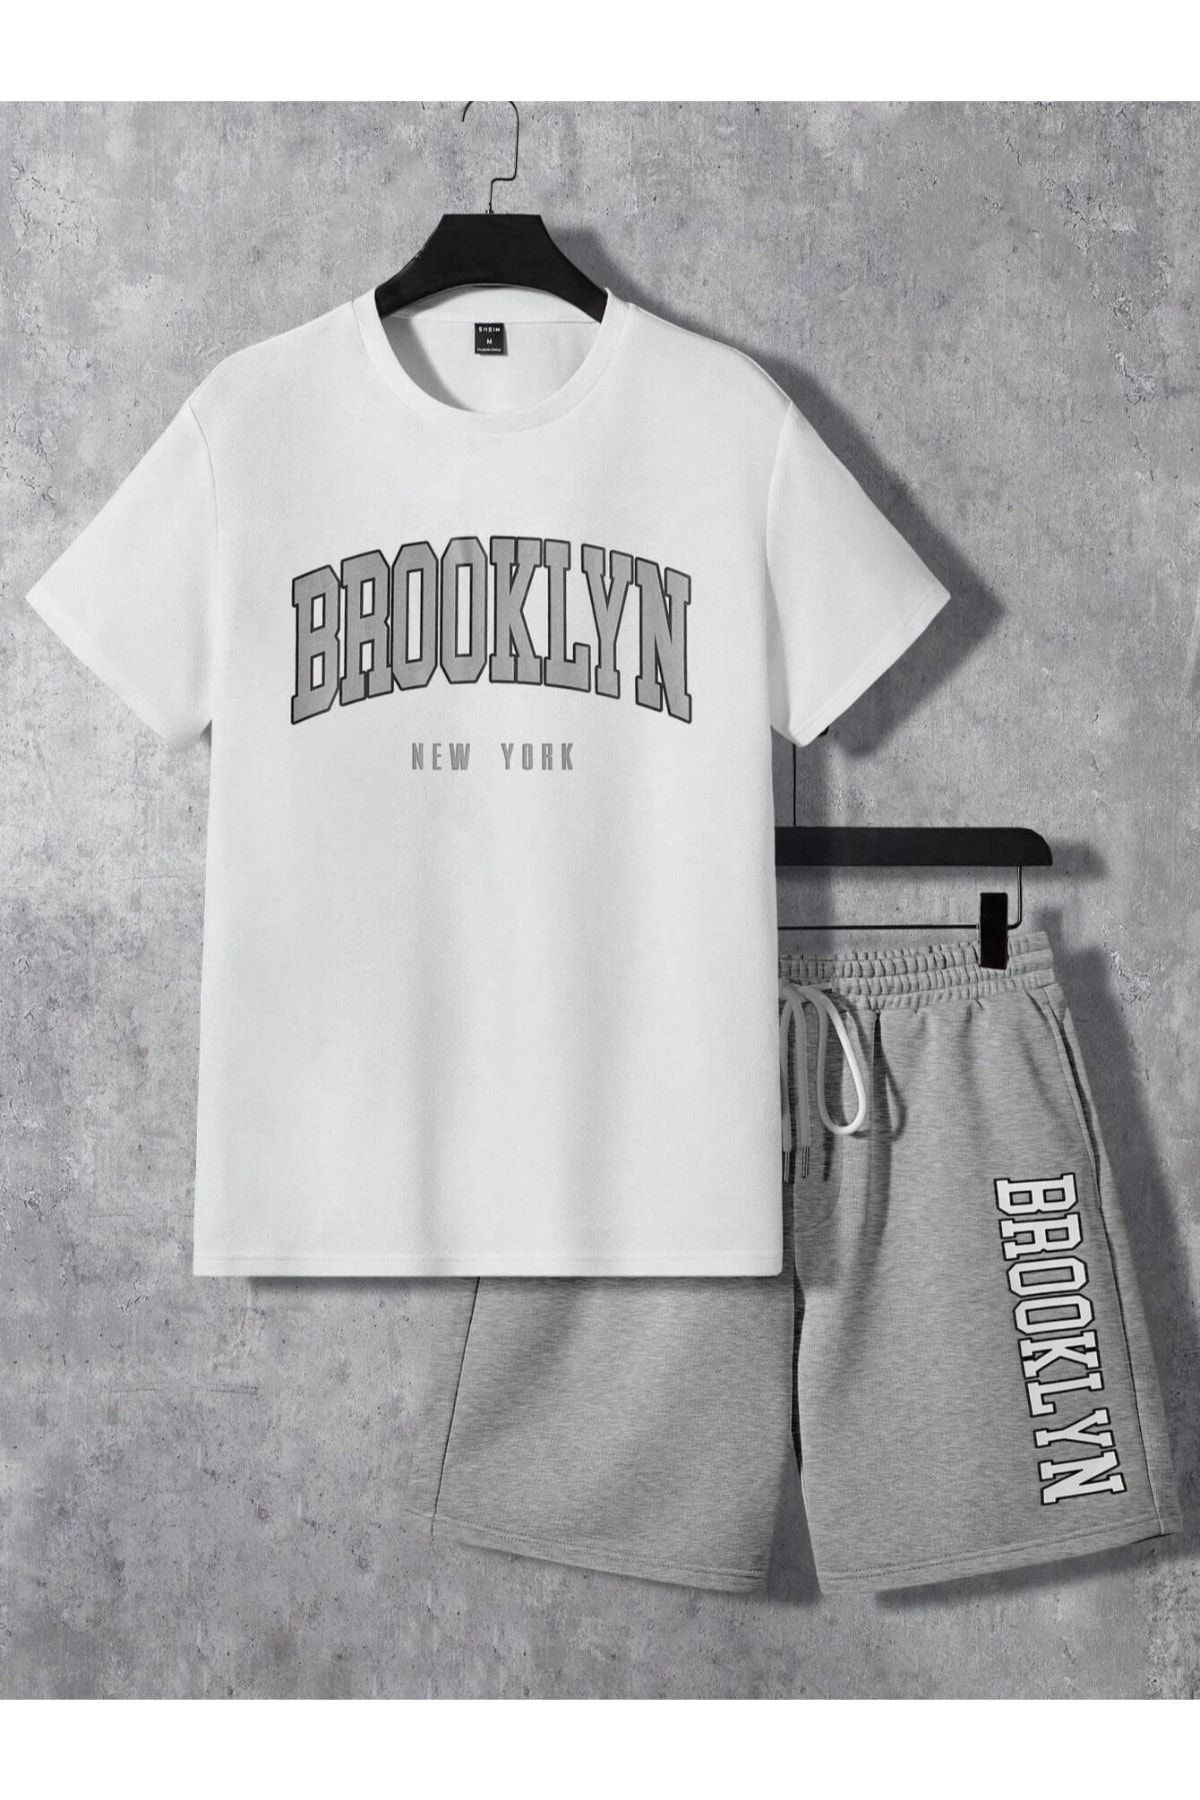 MODARİCH Brooklyn New York Beyaz T-Shirt Gri Şort - Şortlu Tişört Alt Üst Takım Baskılı Bisiklet Yaka